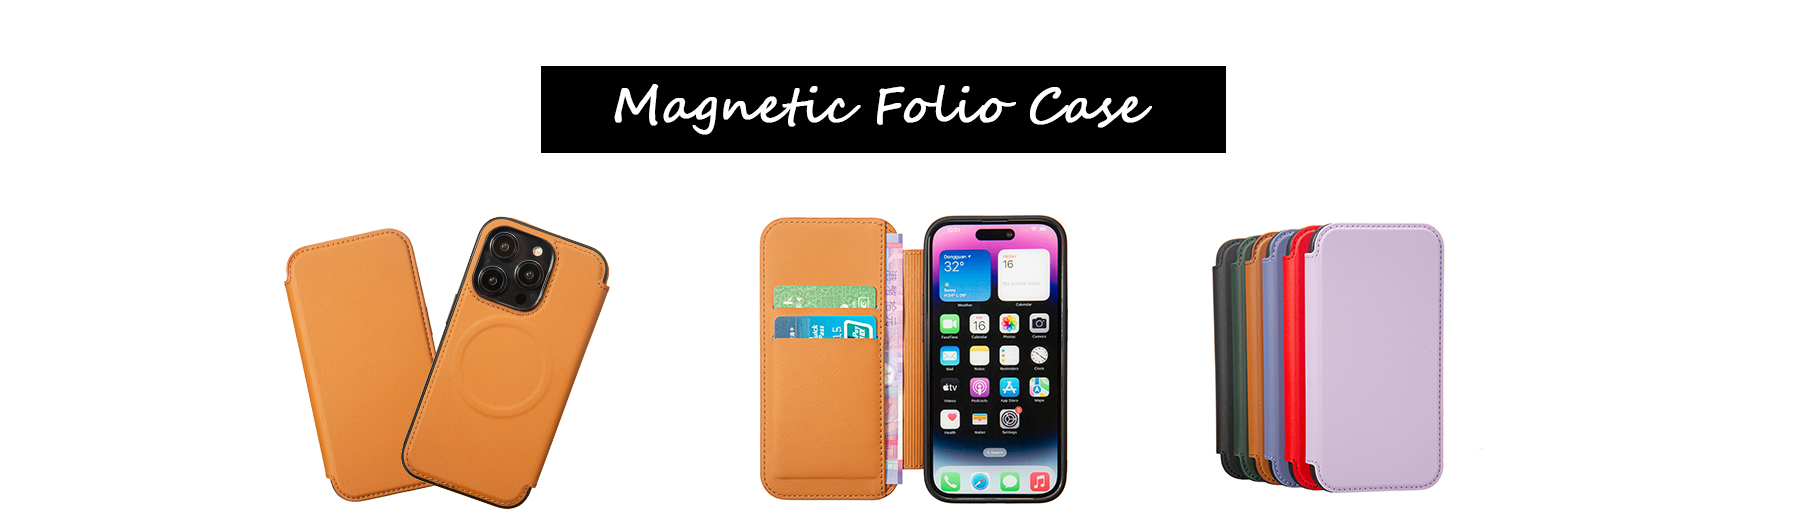 Magnetic Folio Case